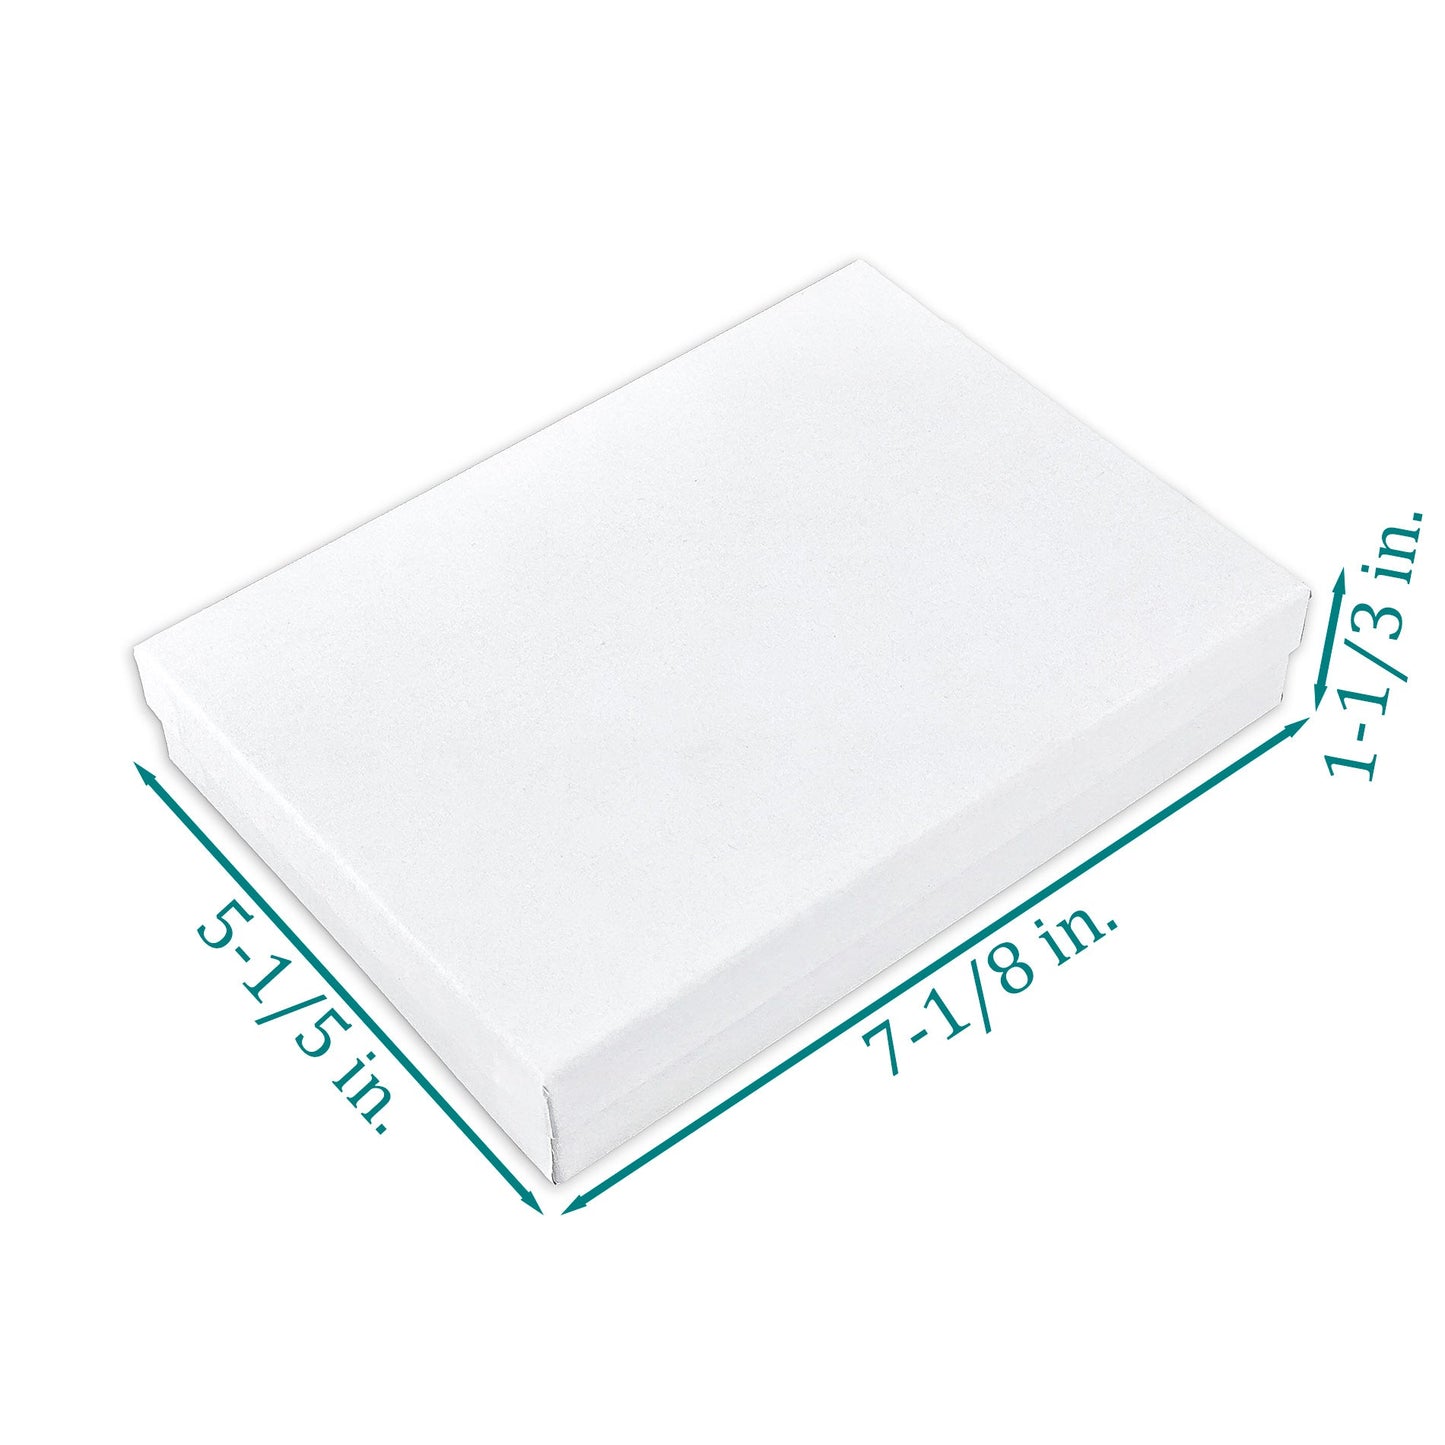 7 1/8" x 5 1/8" Matte White Cotton Filled Paper Box